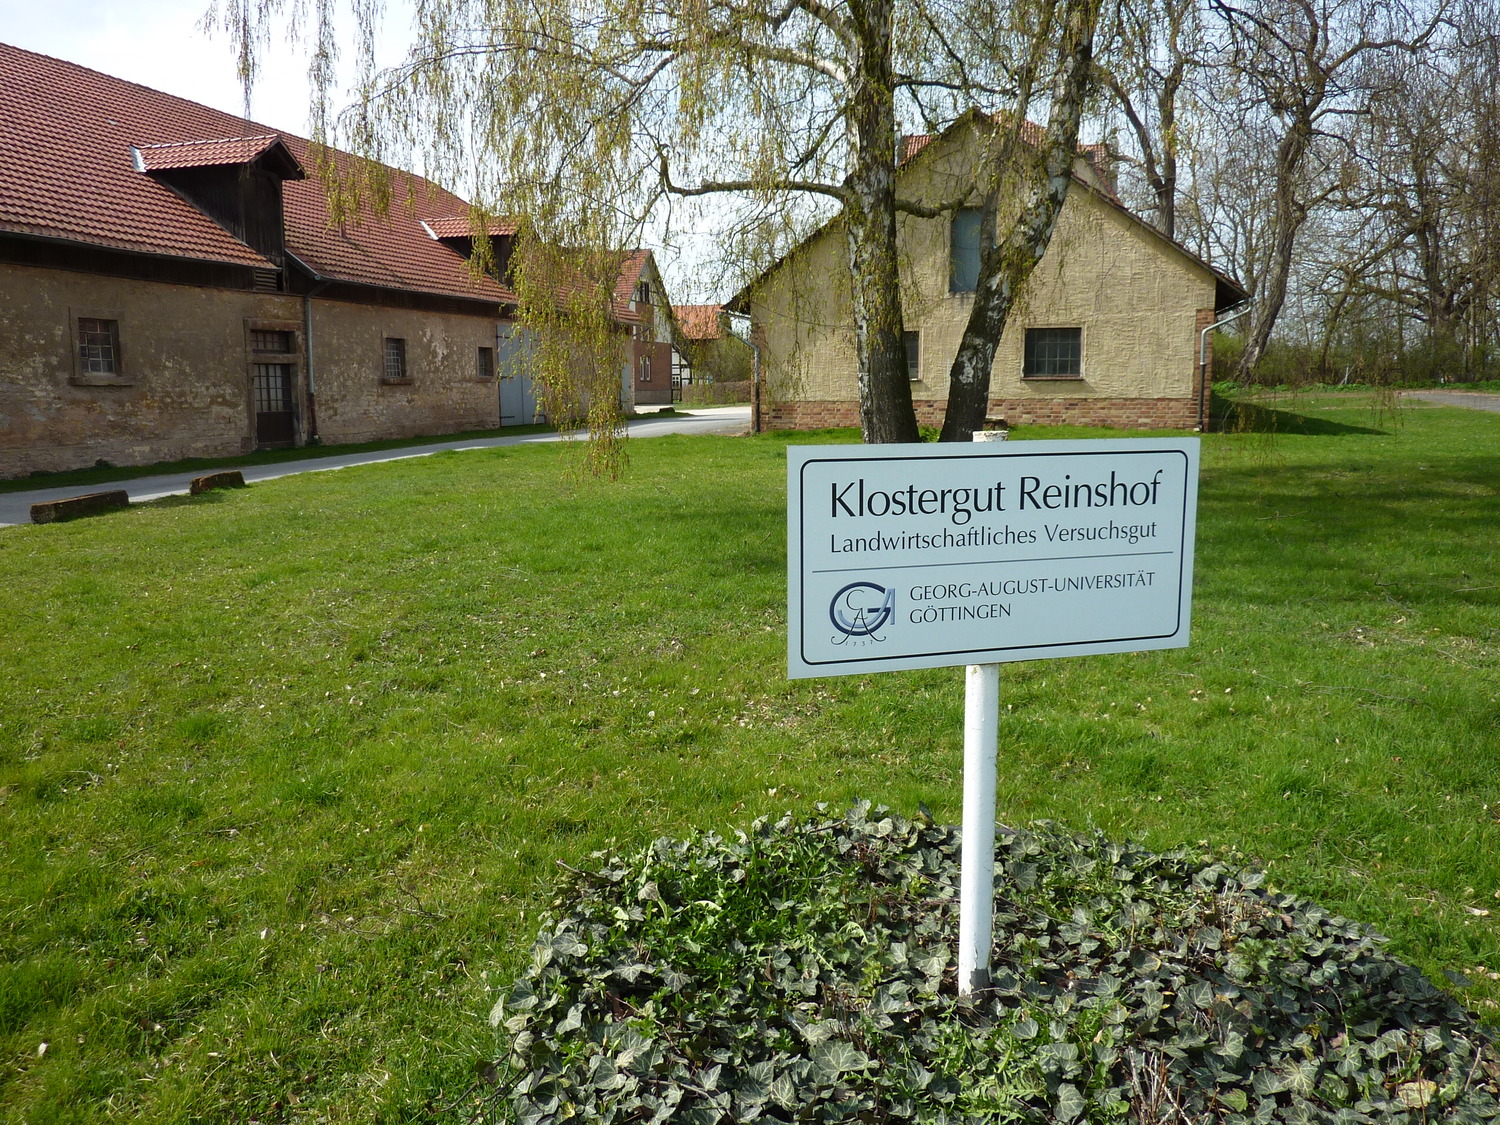 Klostergut Reinshof südlich von Göttingen: Hier befindet sich auch die Versuchsstation für die Feldversuche der Nutzpflanzenwissenschaften.